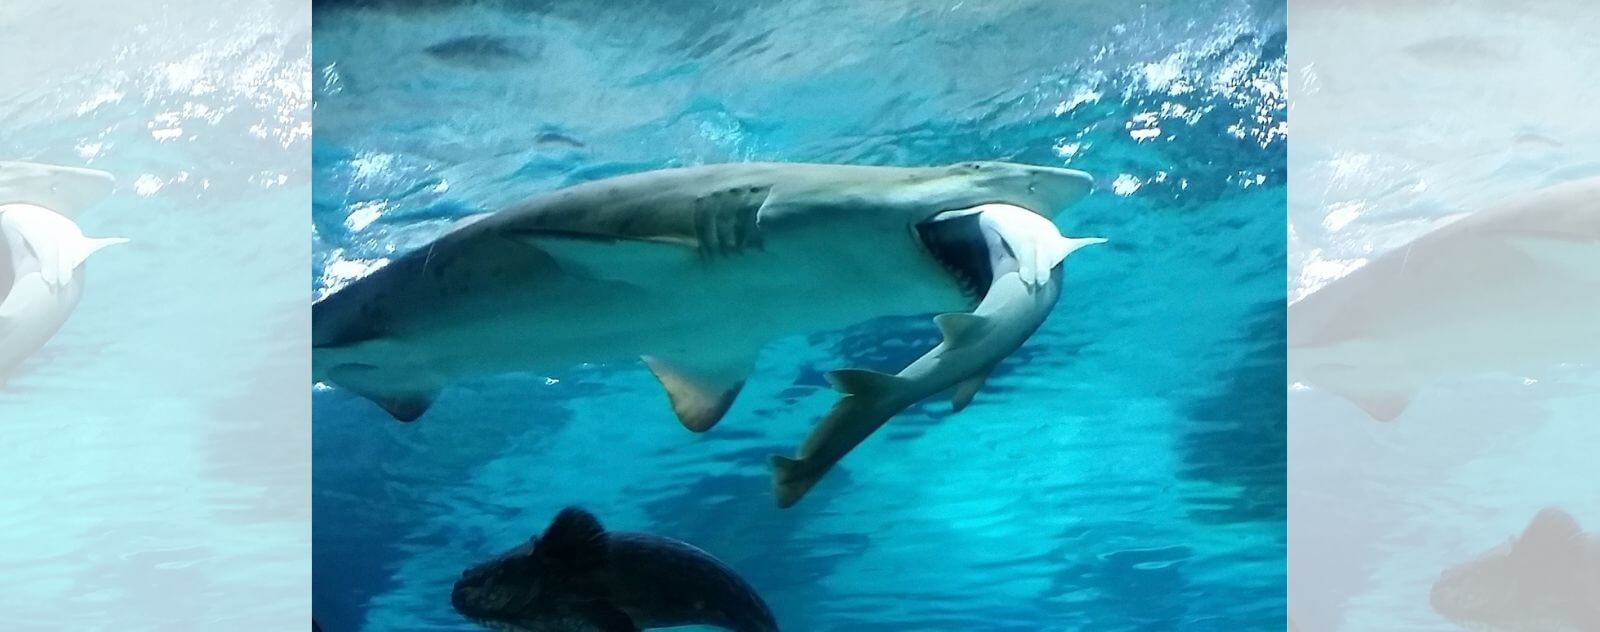 Tiburón que se come a otro tiburón